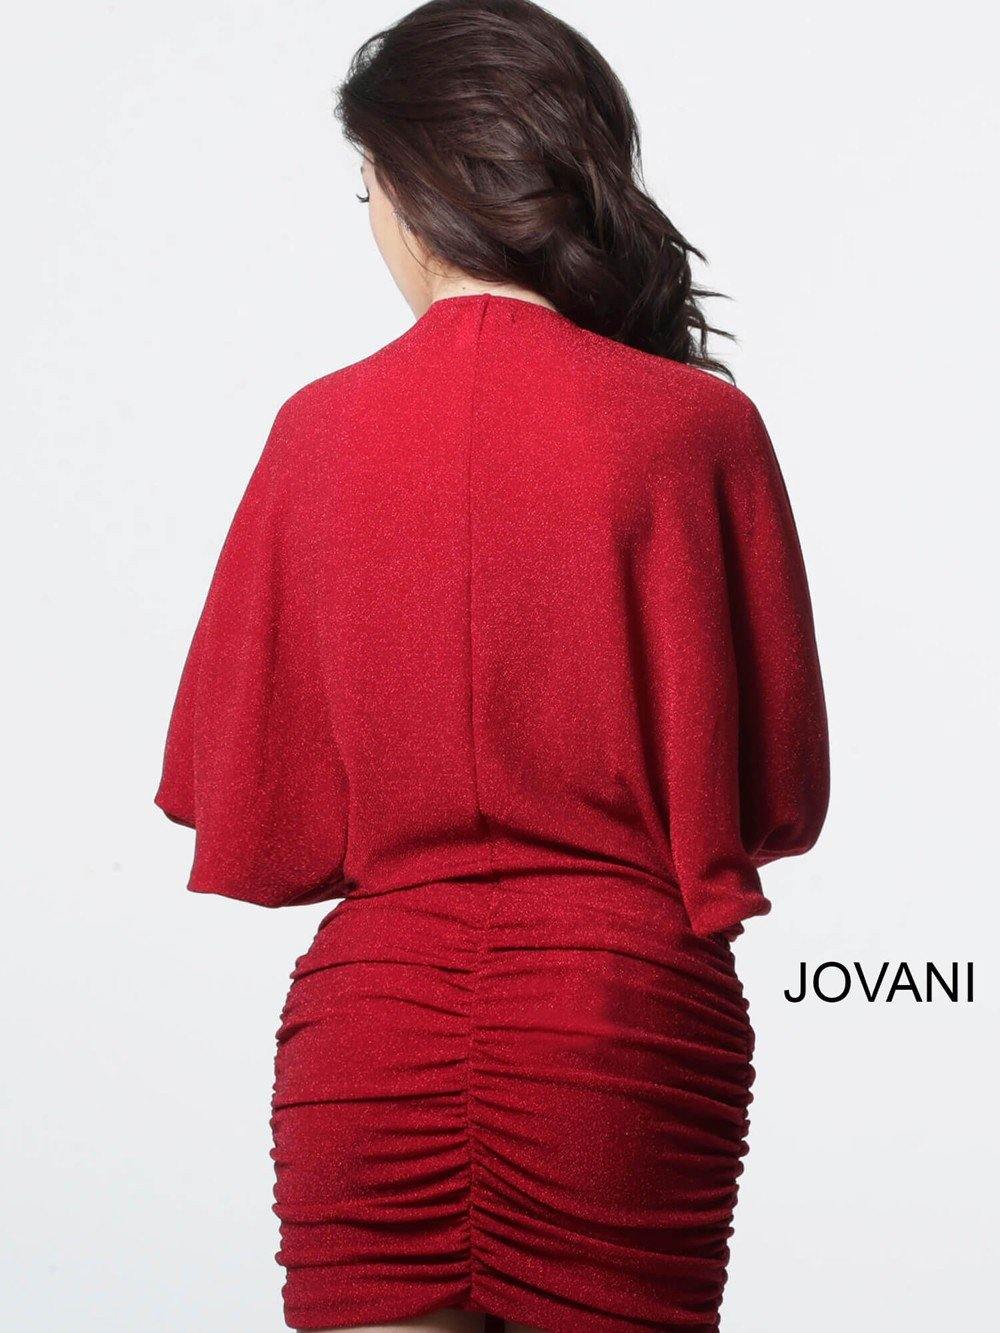 Jovani Short Dress Cocktail - The Dress Outlet